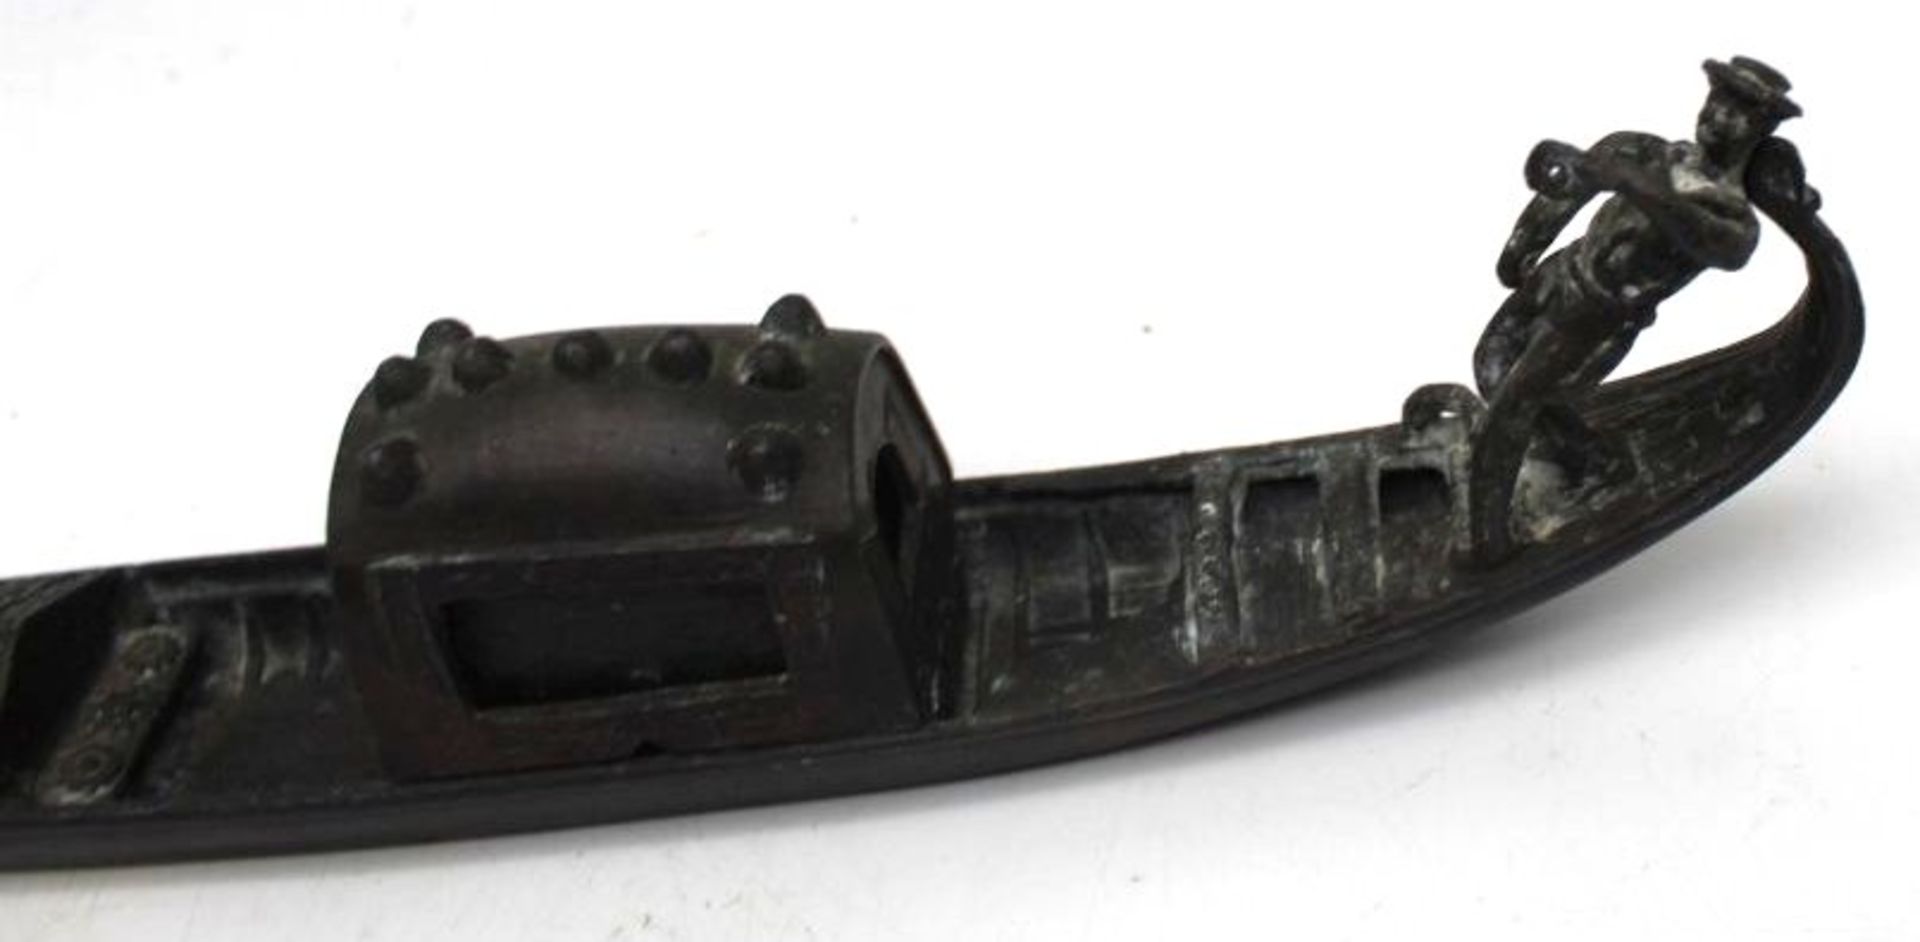 gr. schwere venezianische Gondel aus Metall, bei Gondoliere fehlt das Ruder, Altersspuren, L-30cm, - Image 2 of 5